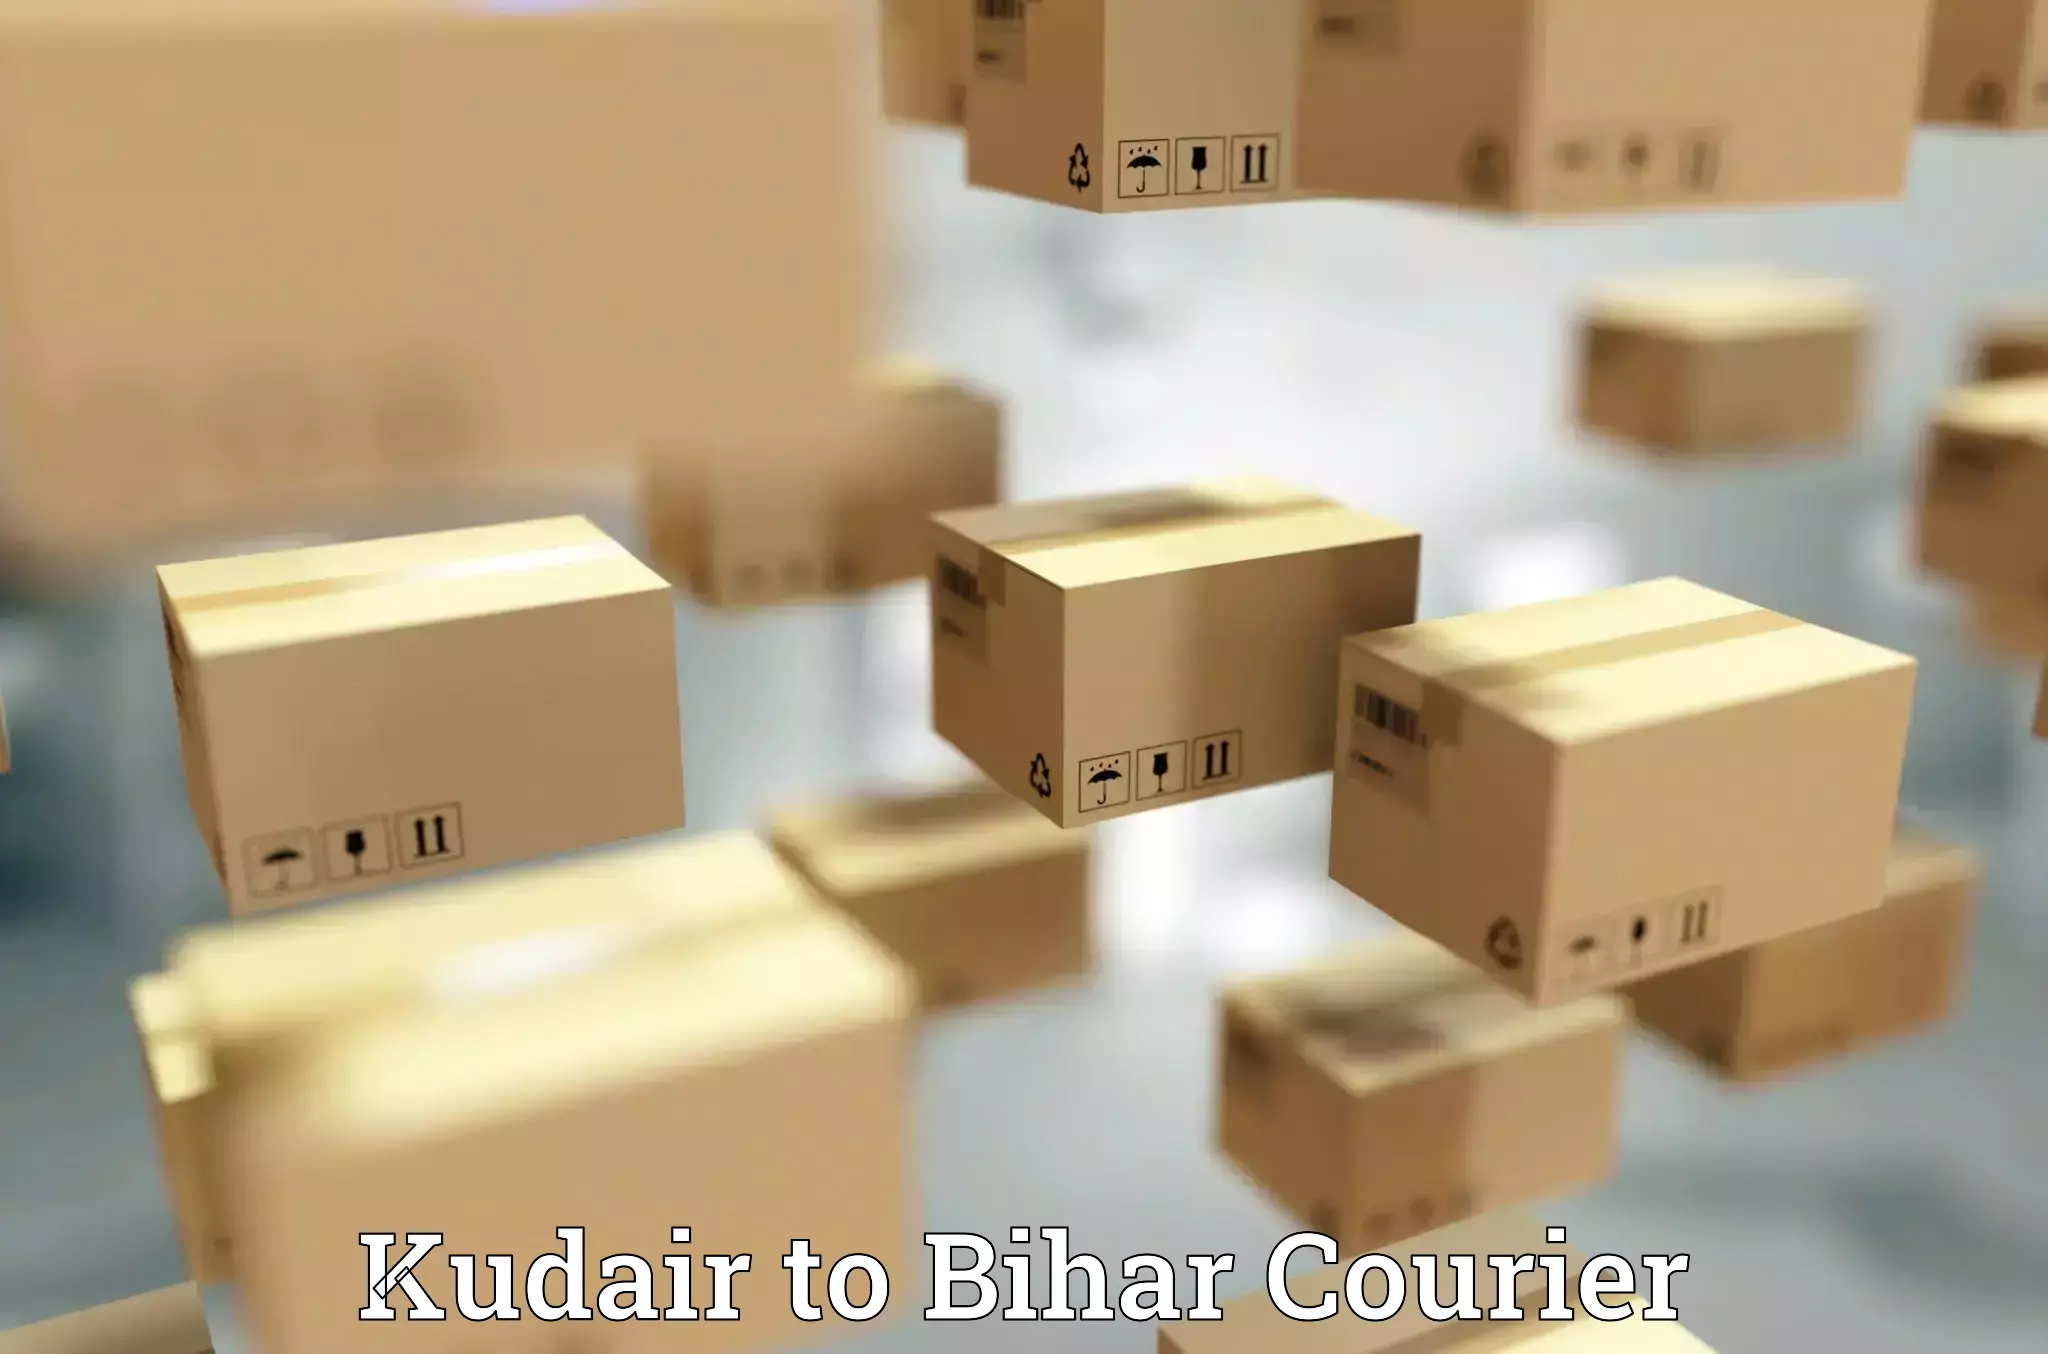 High-efficiency logistics Kudair to Sahebpur Kamal